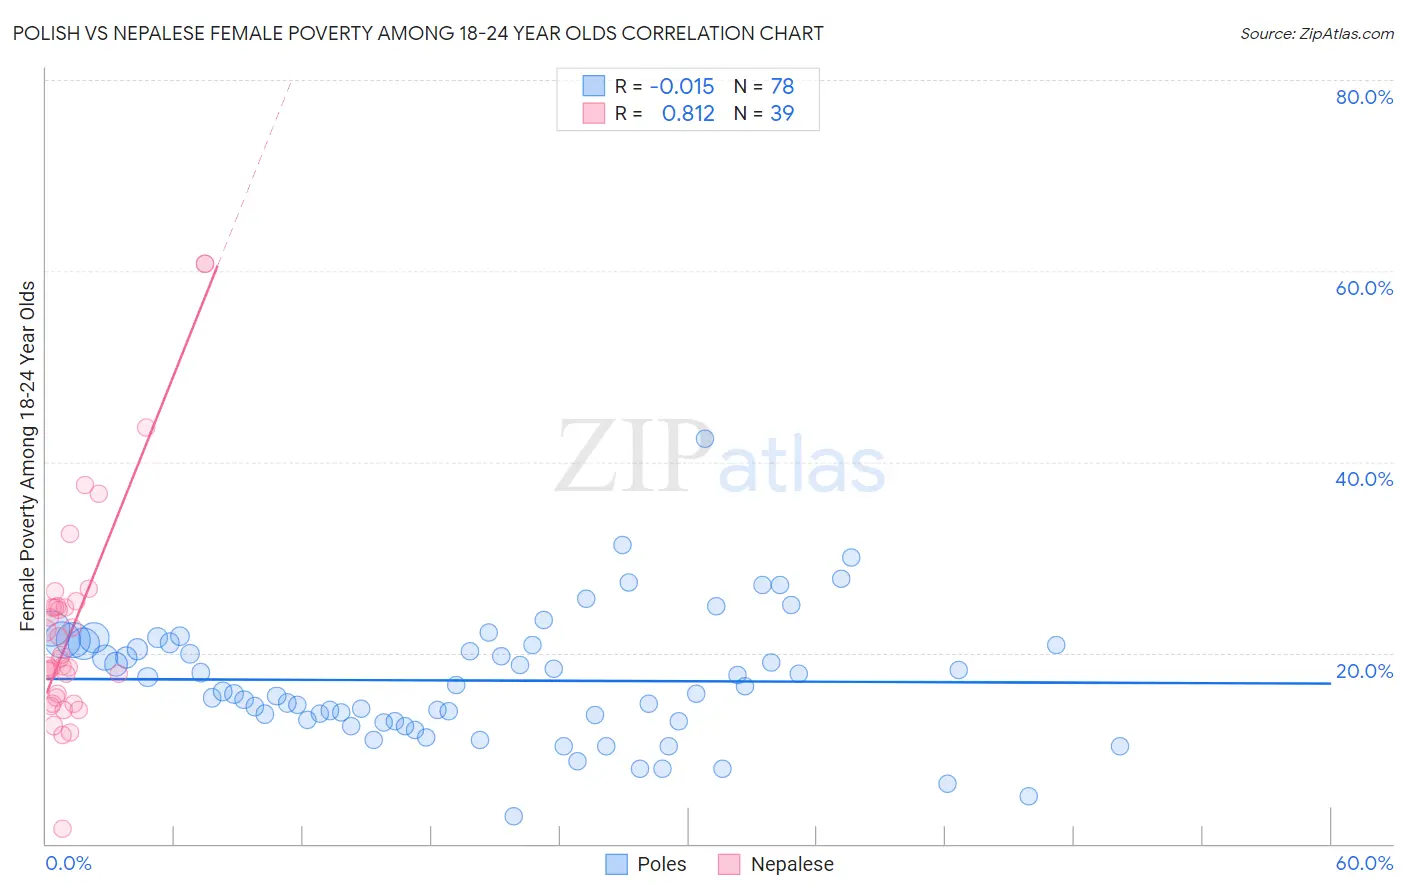 Polish vs Nepalese Female Poverty Among 18-24 Year Olds